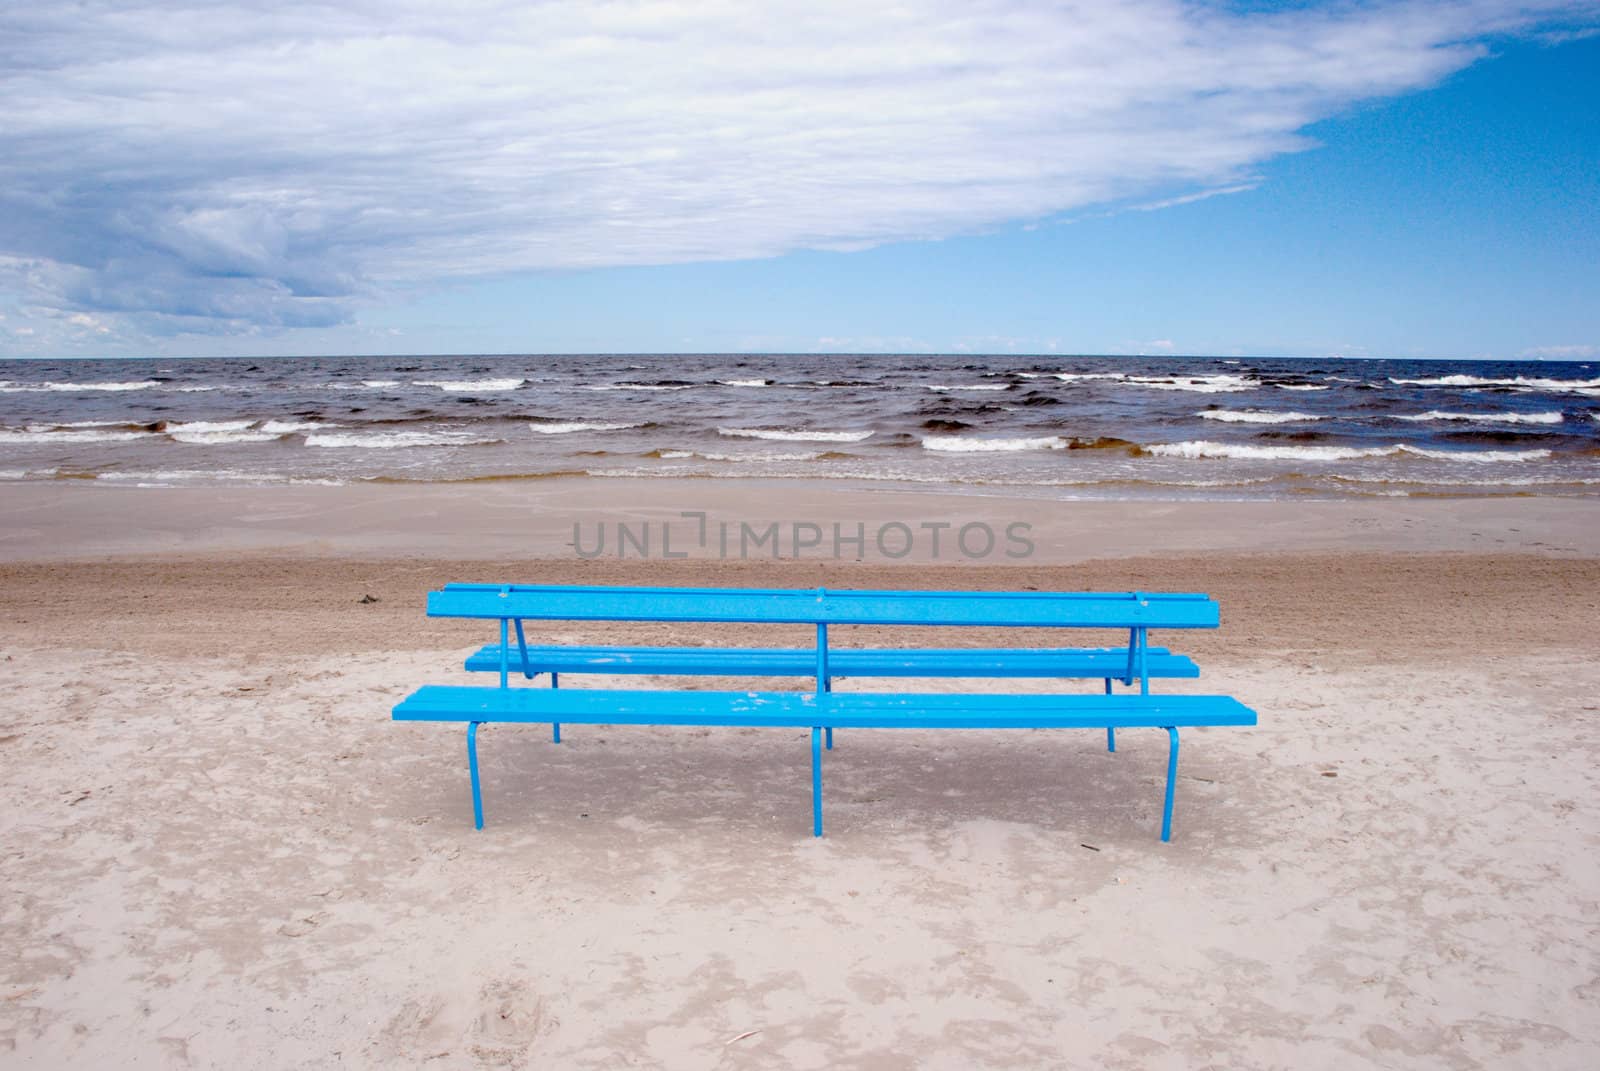 Blue bench on the beach sand near the sea.